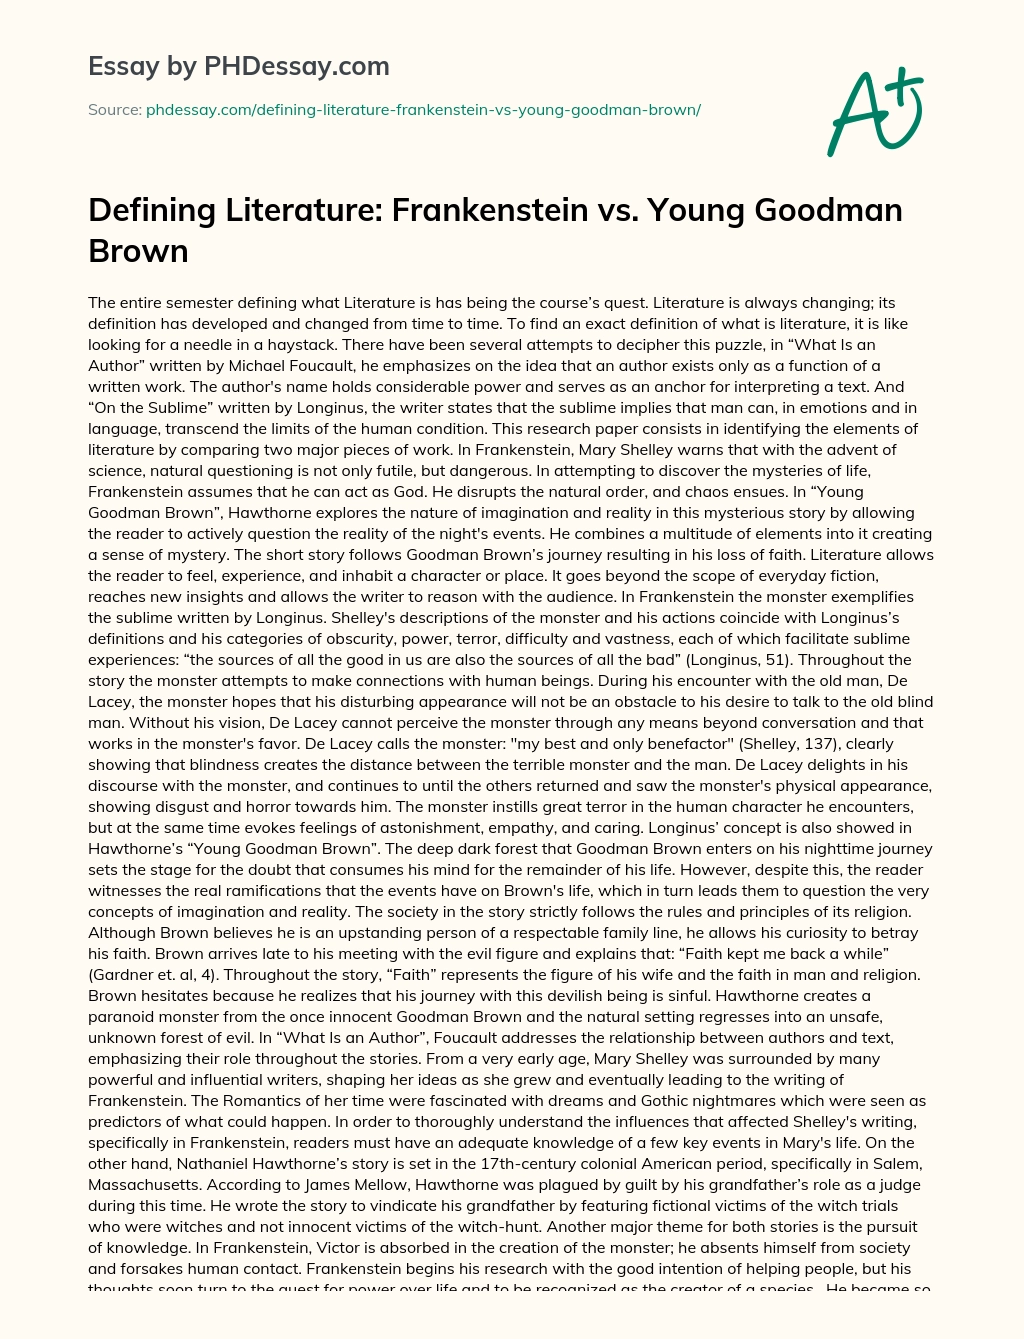 Defining Literature: Frankenstein vs. Young Goodman Brown essay